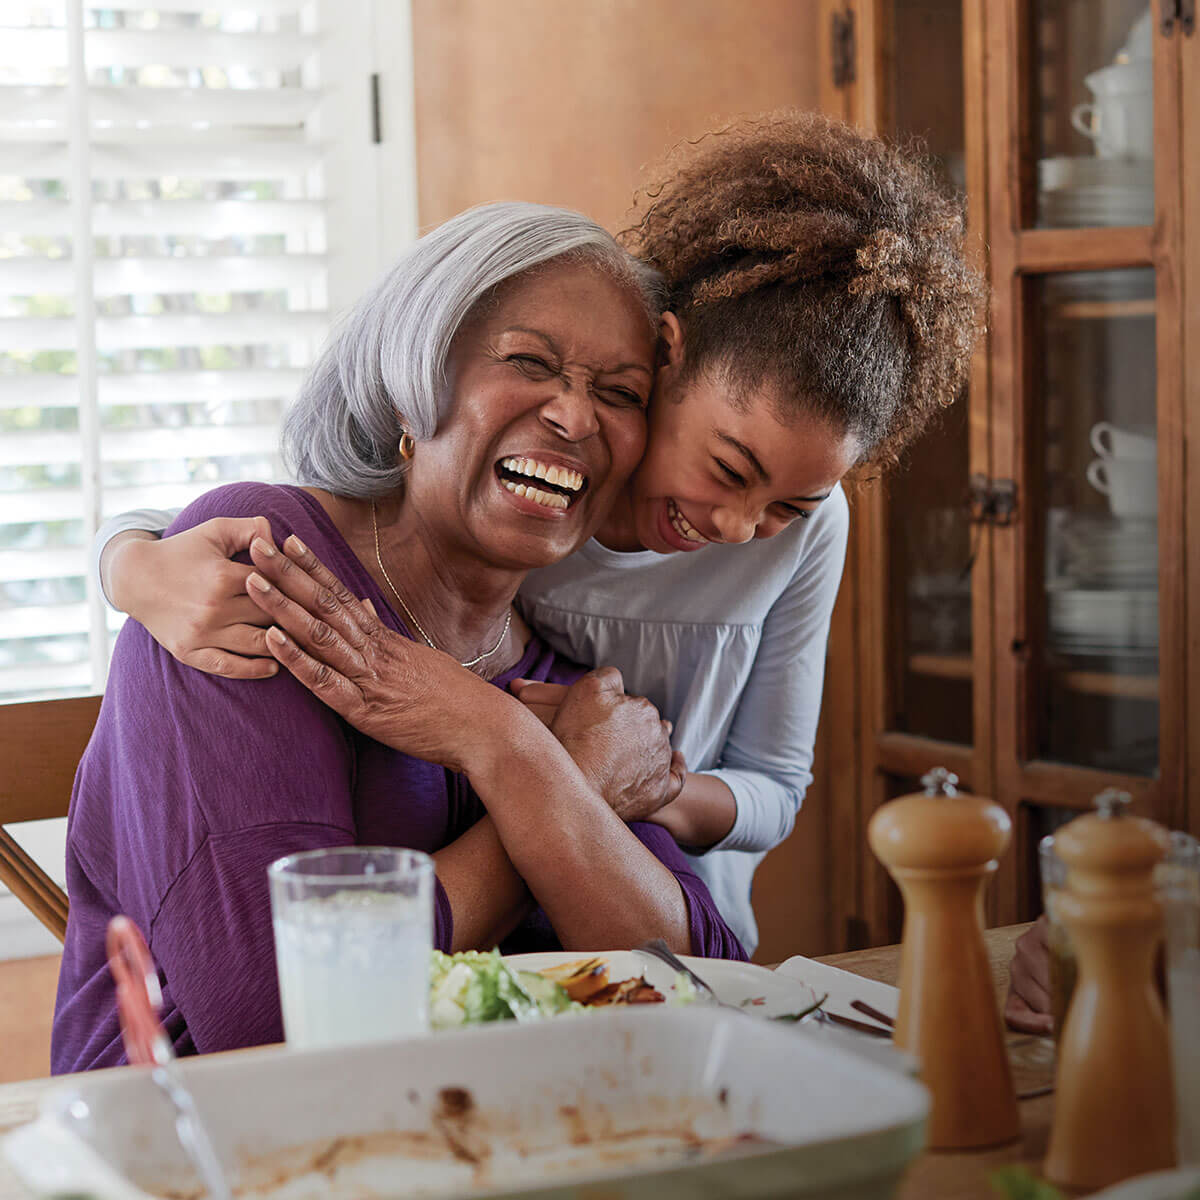 La abuela y su nieta se abrazan y sonríen durante la cena.